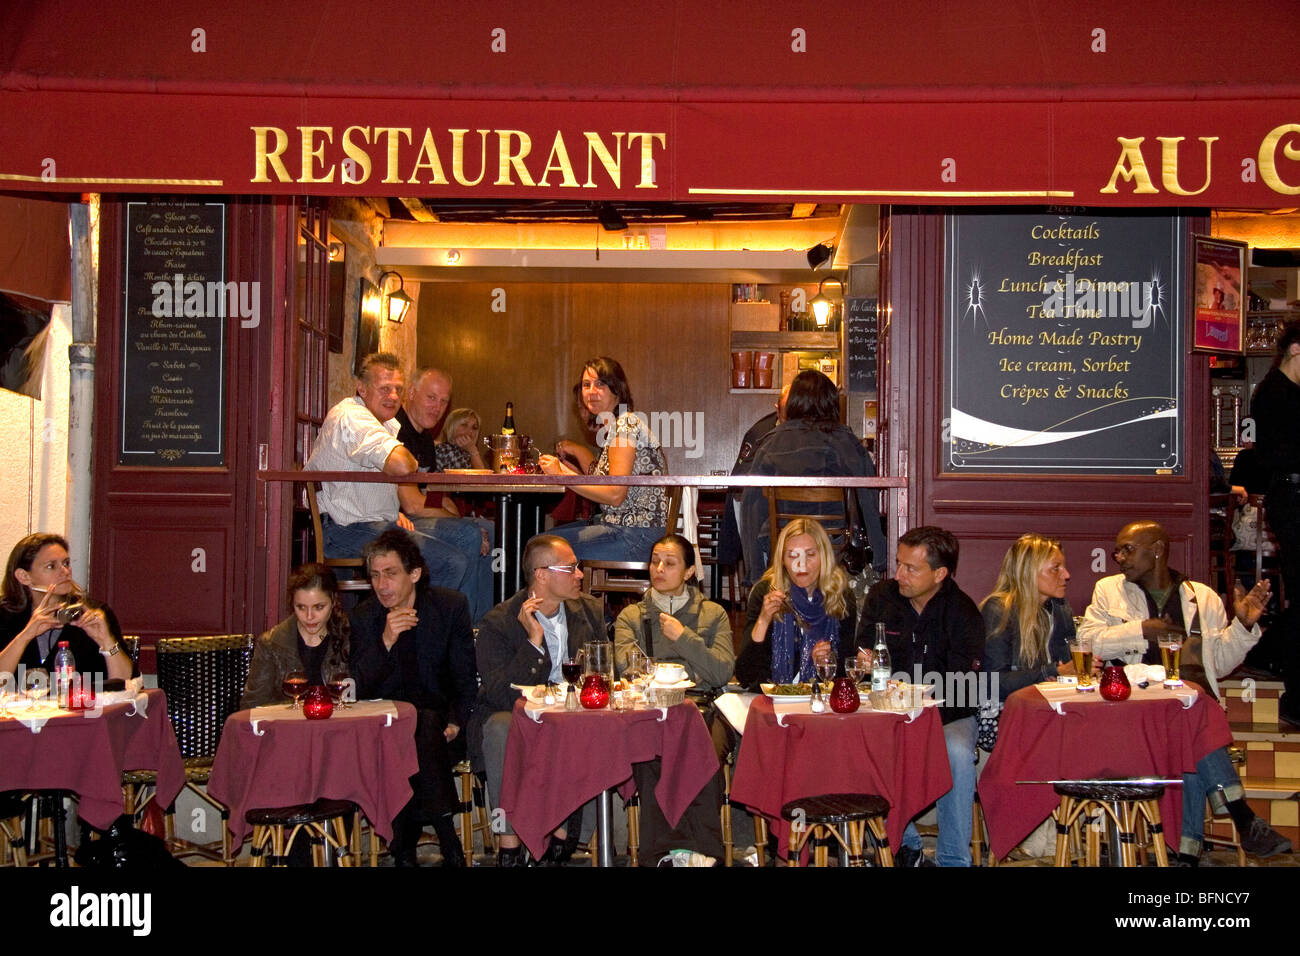 Restaurante exterior y disfrutar de la vida nocturna en el barrio de Montmartre de París, Francia. Foto de stock